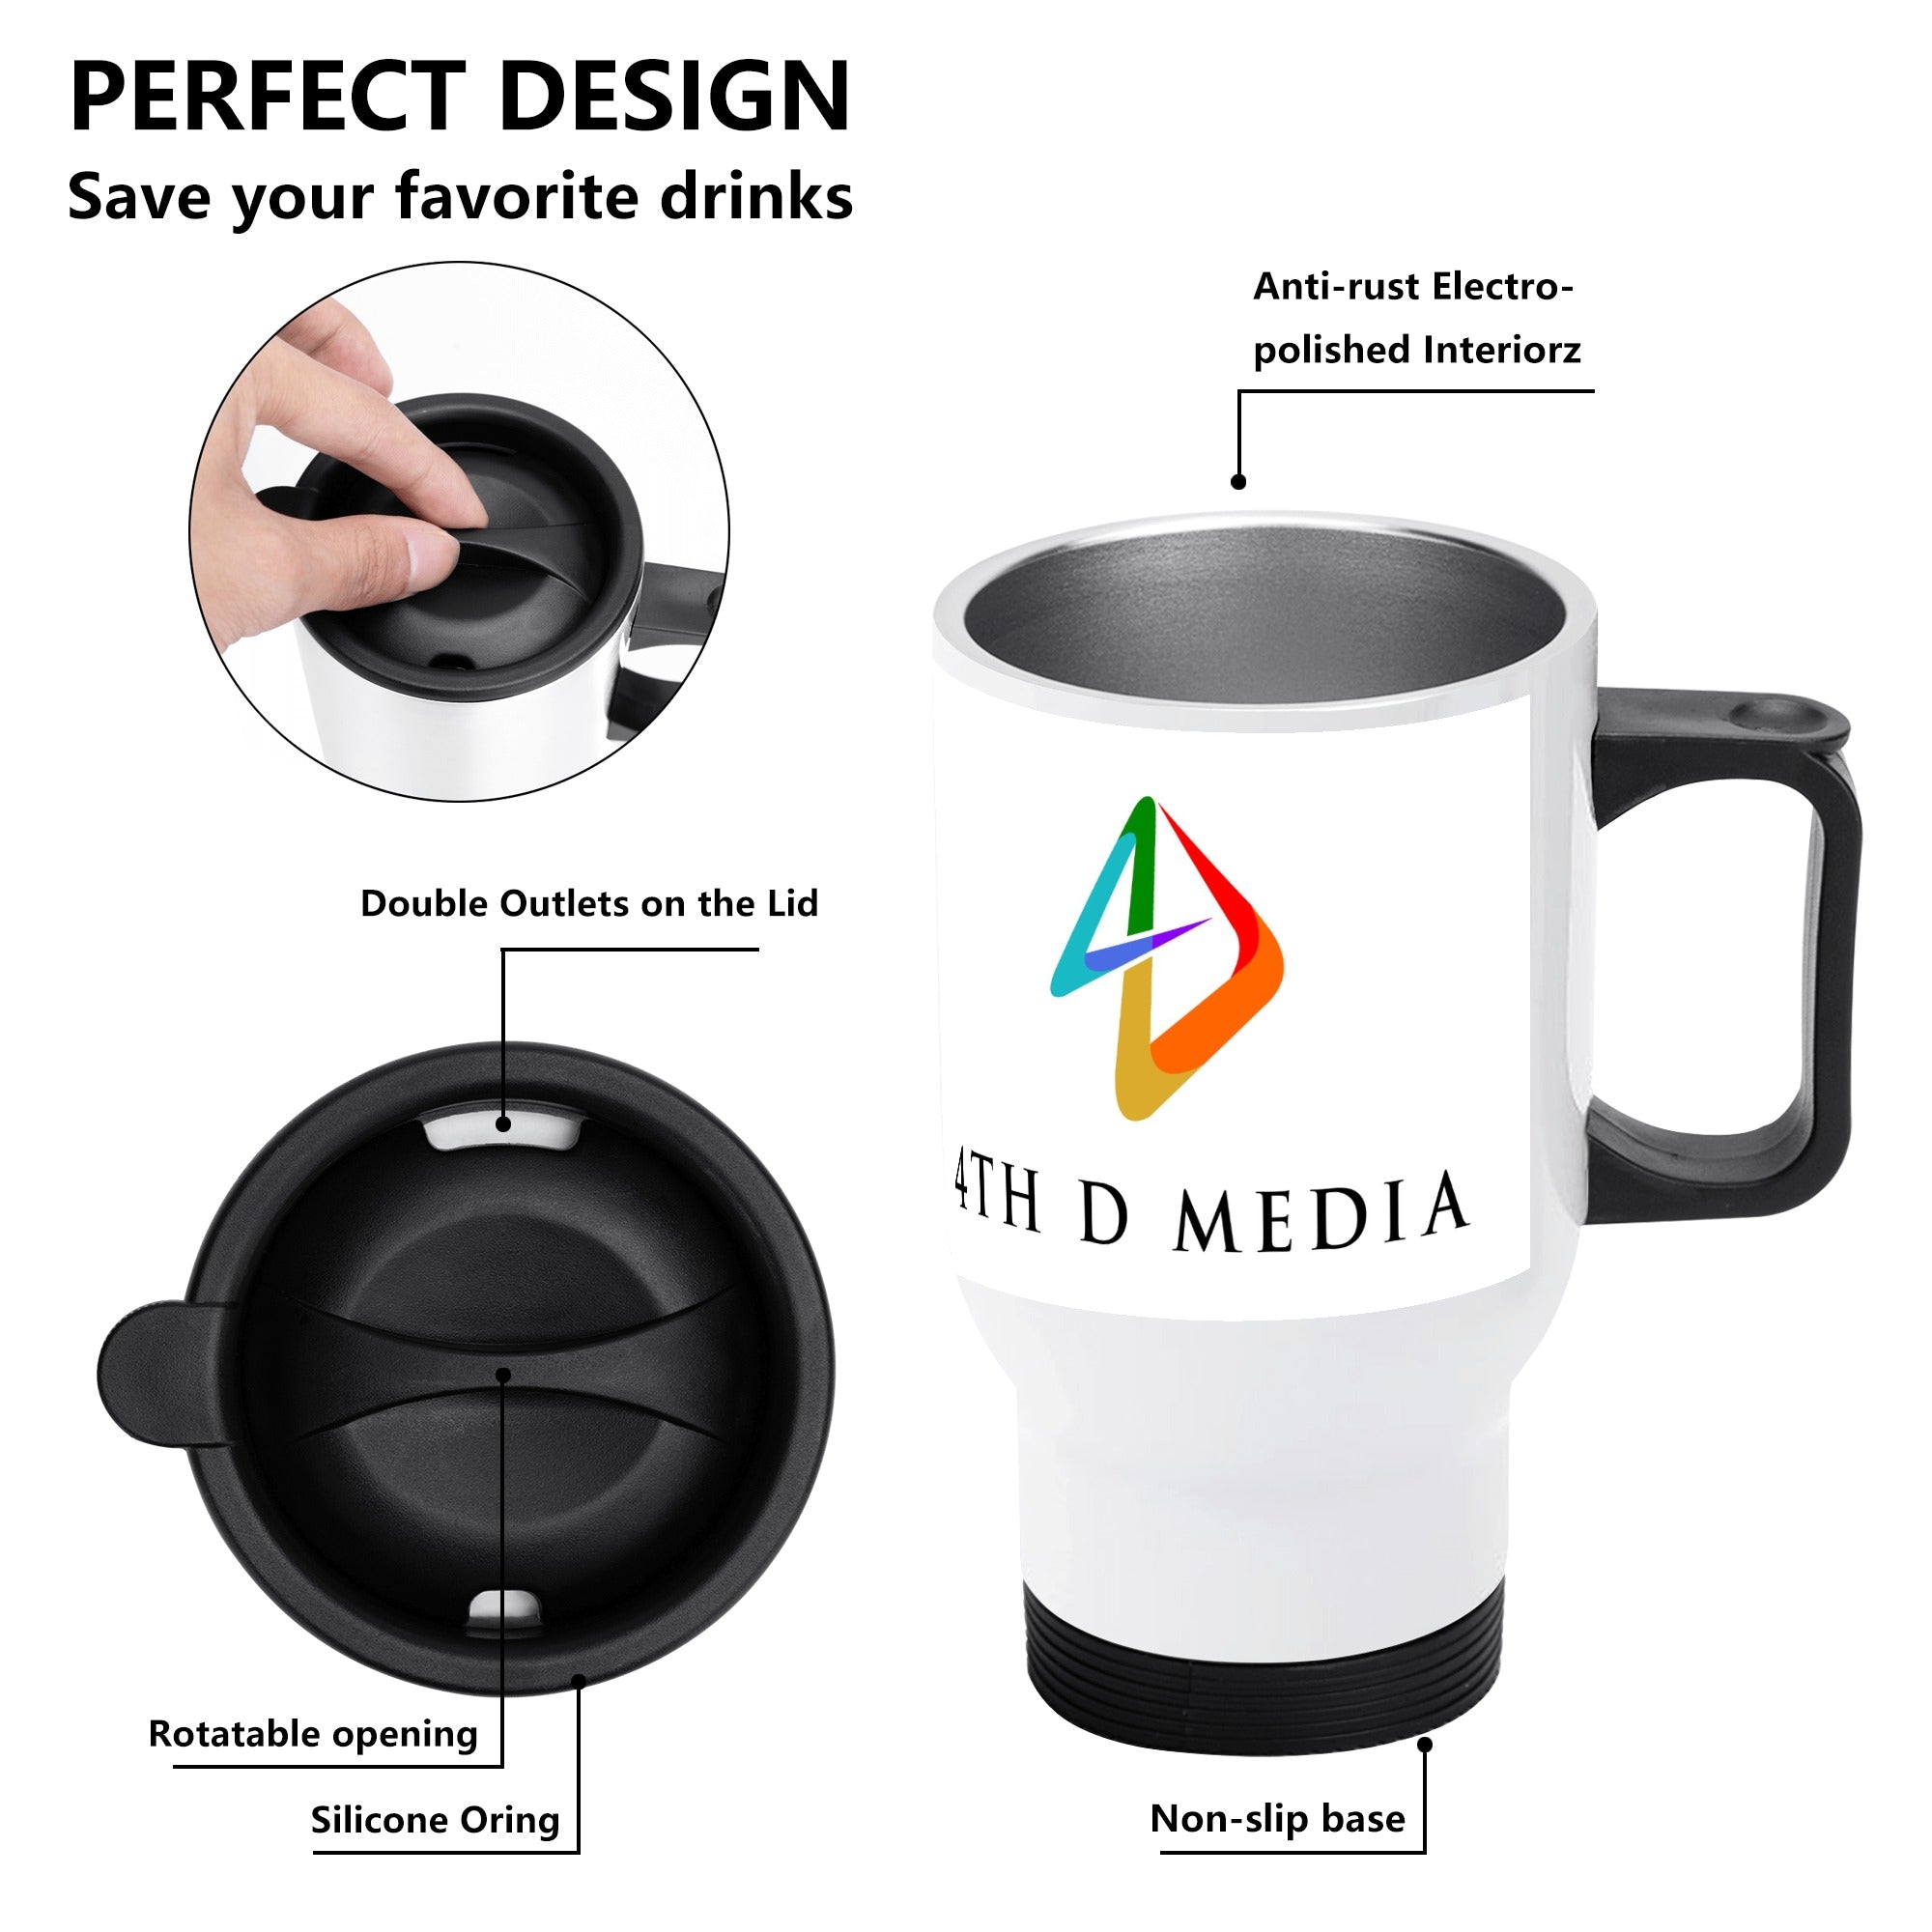 4thDMedia Travel Coffee Mug